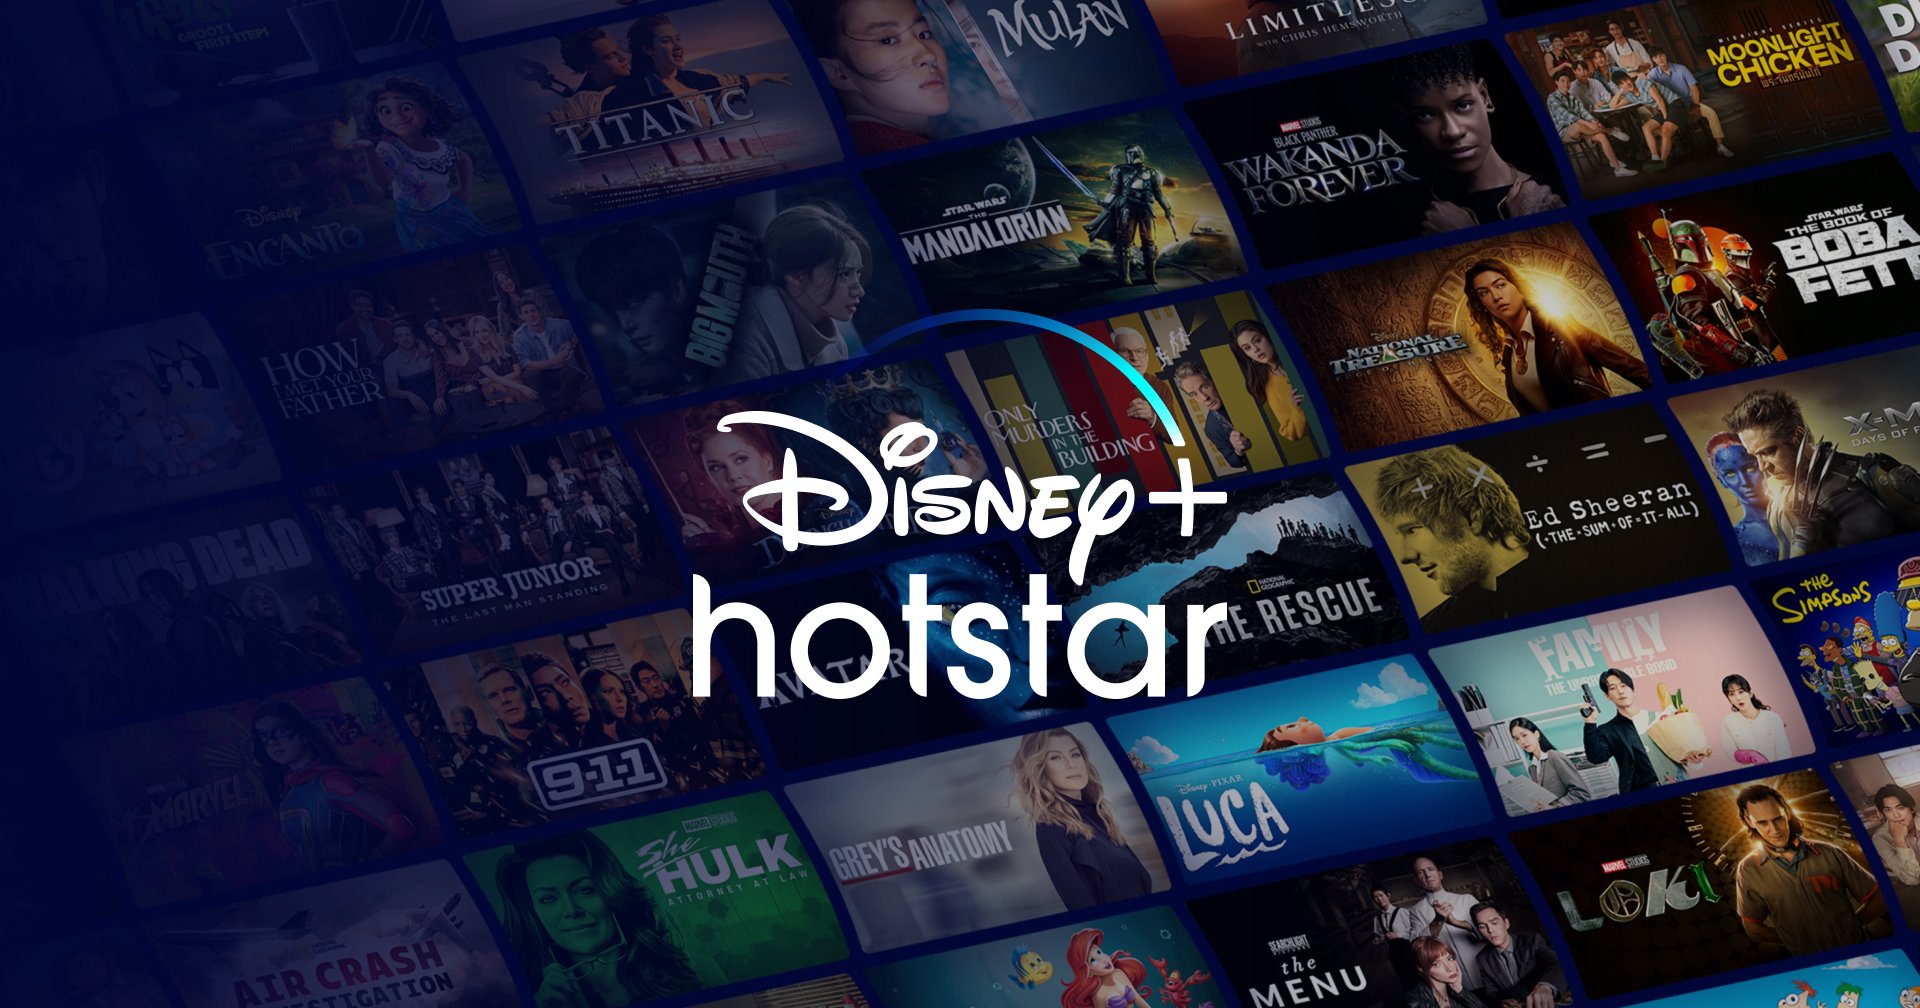 ฉลองครบ 2 ปี!! Disney+ Hotstar เพิ่มราคาบริการจาก 799 เป็น 2,290 บาทต่อปี พร้อมเพิ่มแพ็กเกจราคาประหยัด 99 บาทต่อเดือน เริ่ม 29 มิ.ย. นี้